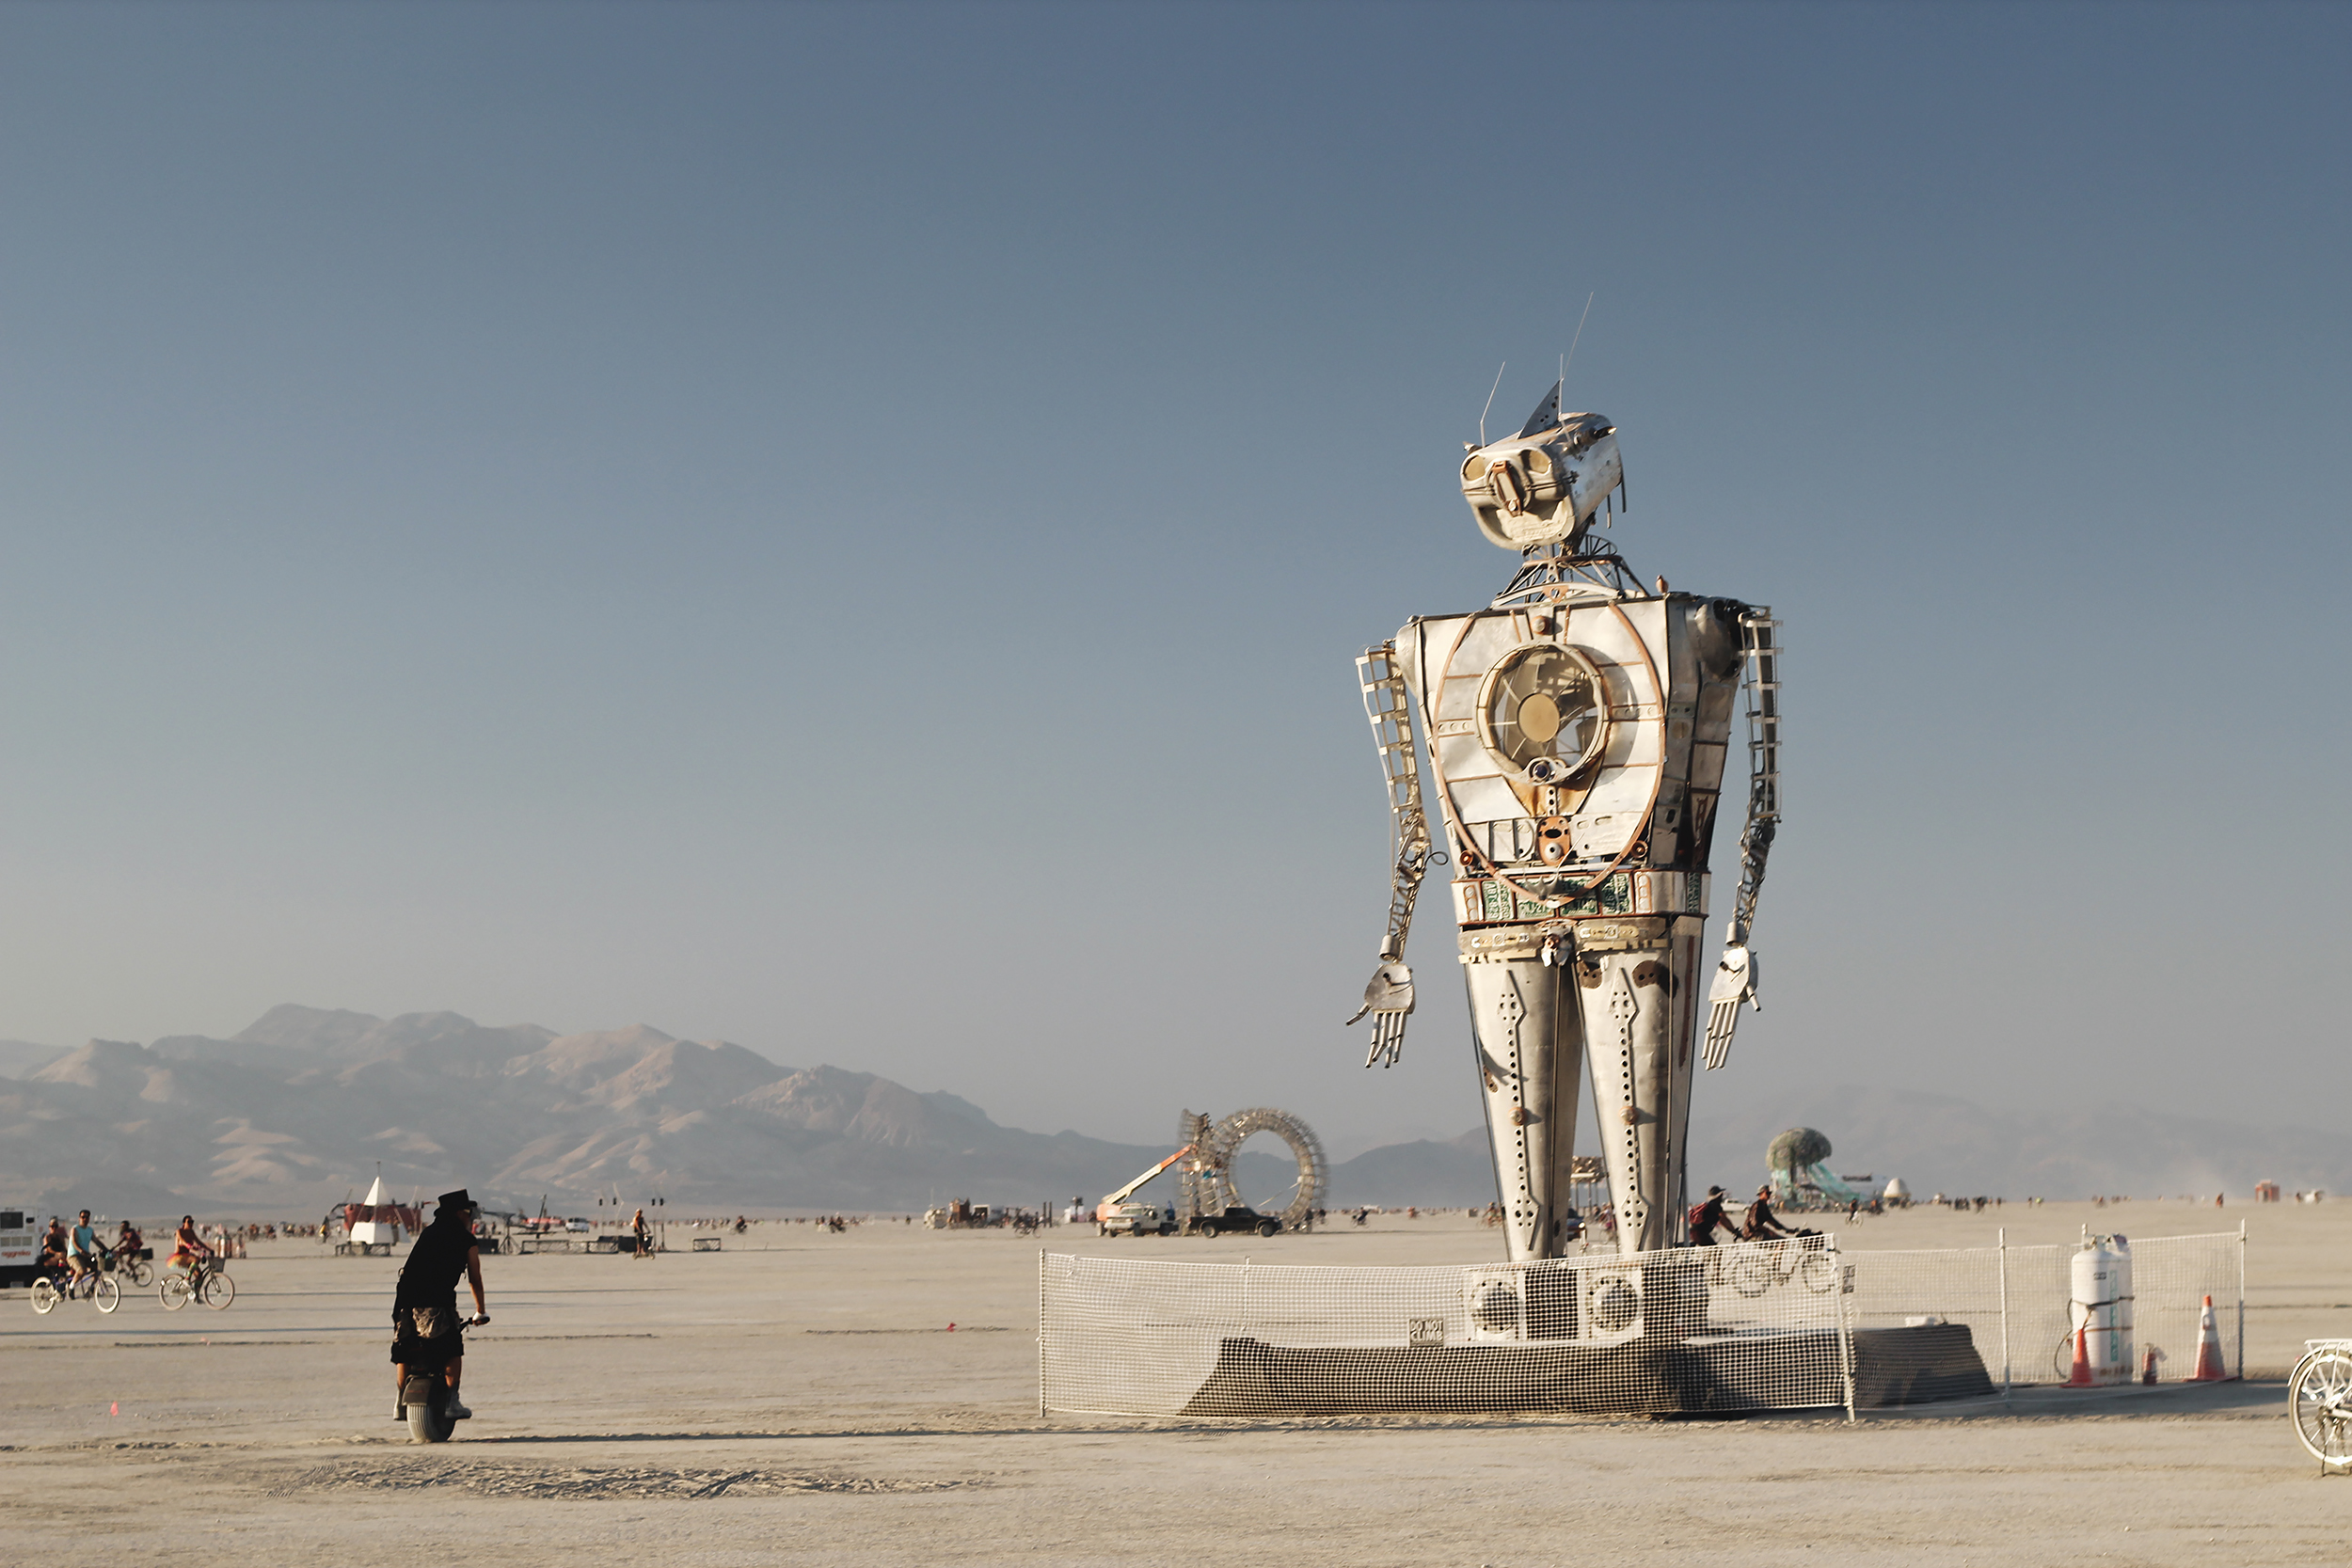 Burning Man 2018: iRobot